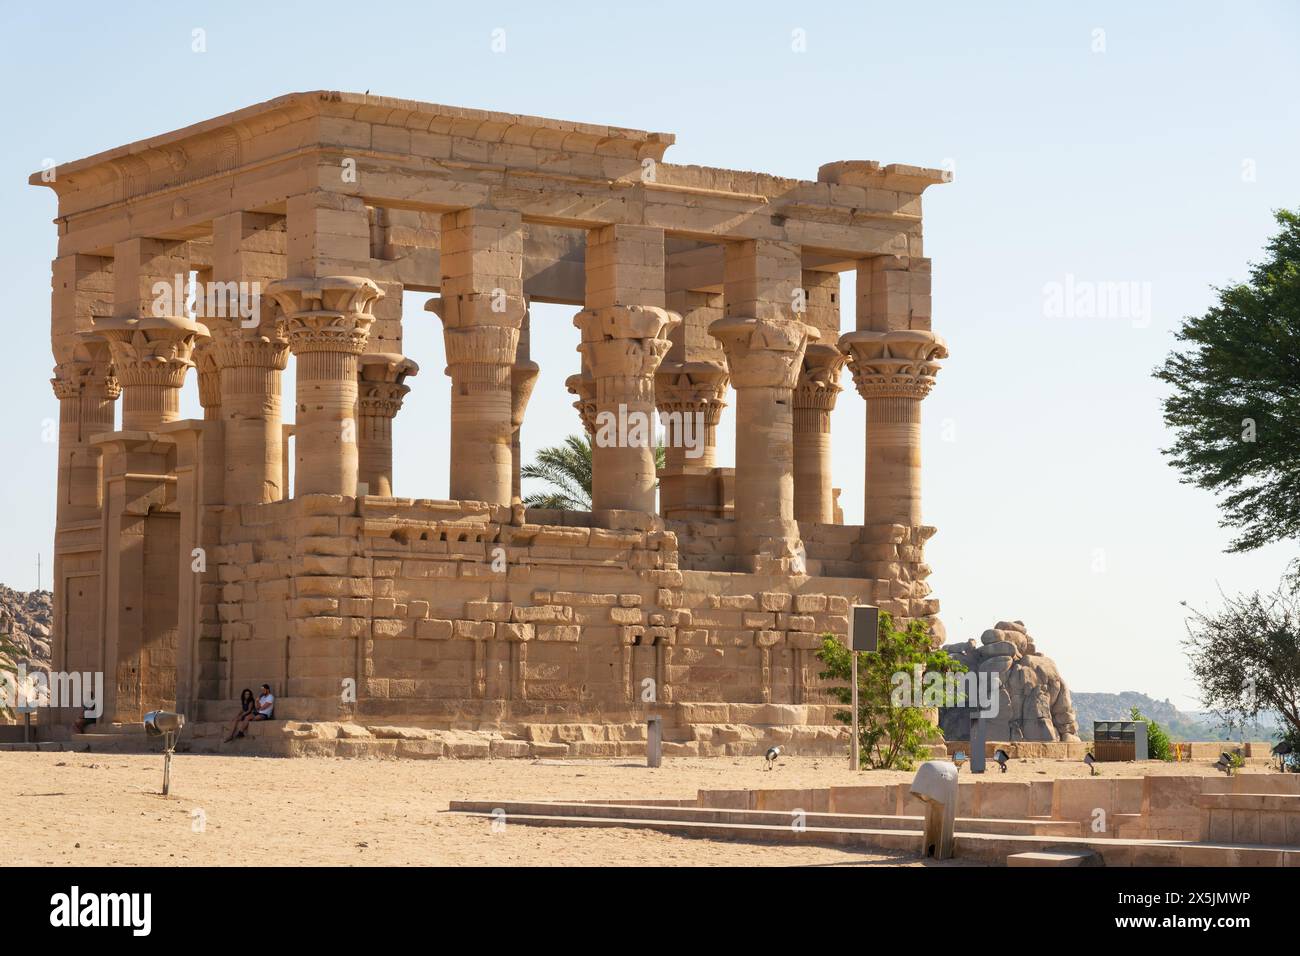 Kiosque de Trajans, complexe du temple de Philae, île d'Agilkia, réservoir du barrage d'Assouan. Lieu de sépulture d'Osiris. Égypte Banque D'Images